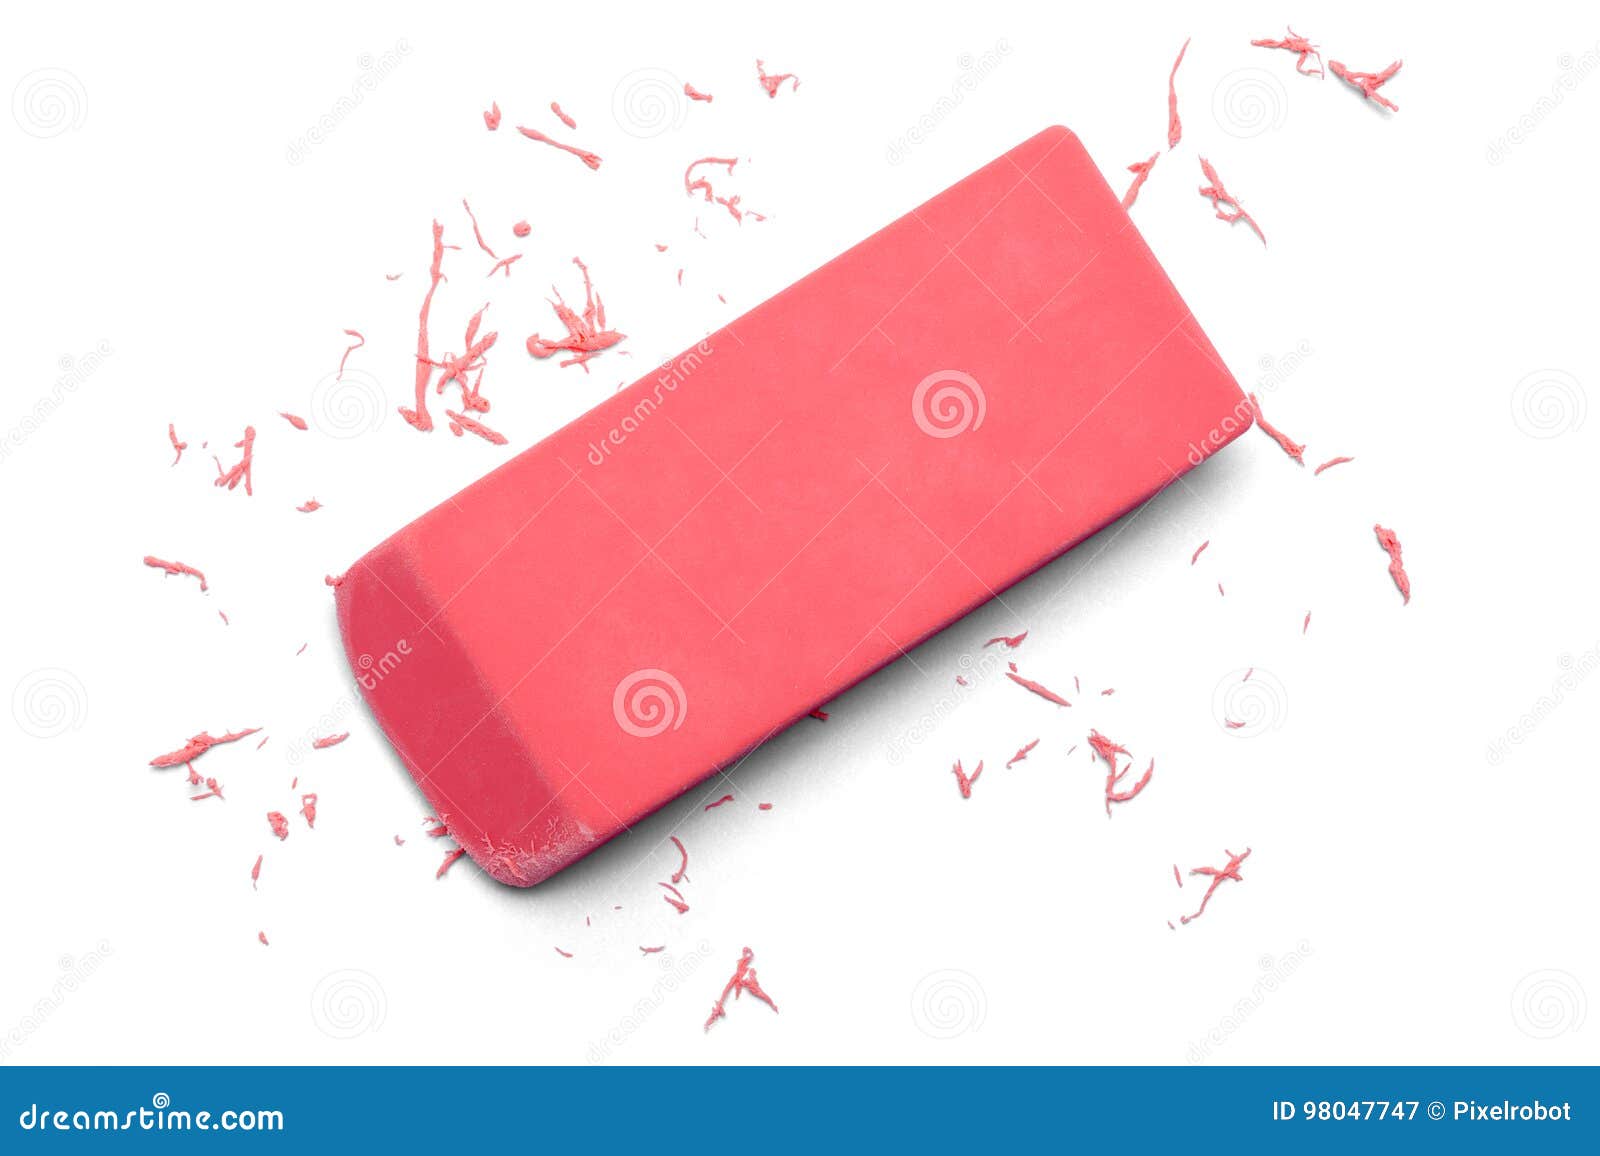 eraser pink erasing top view